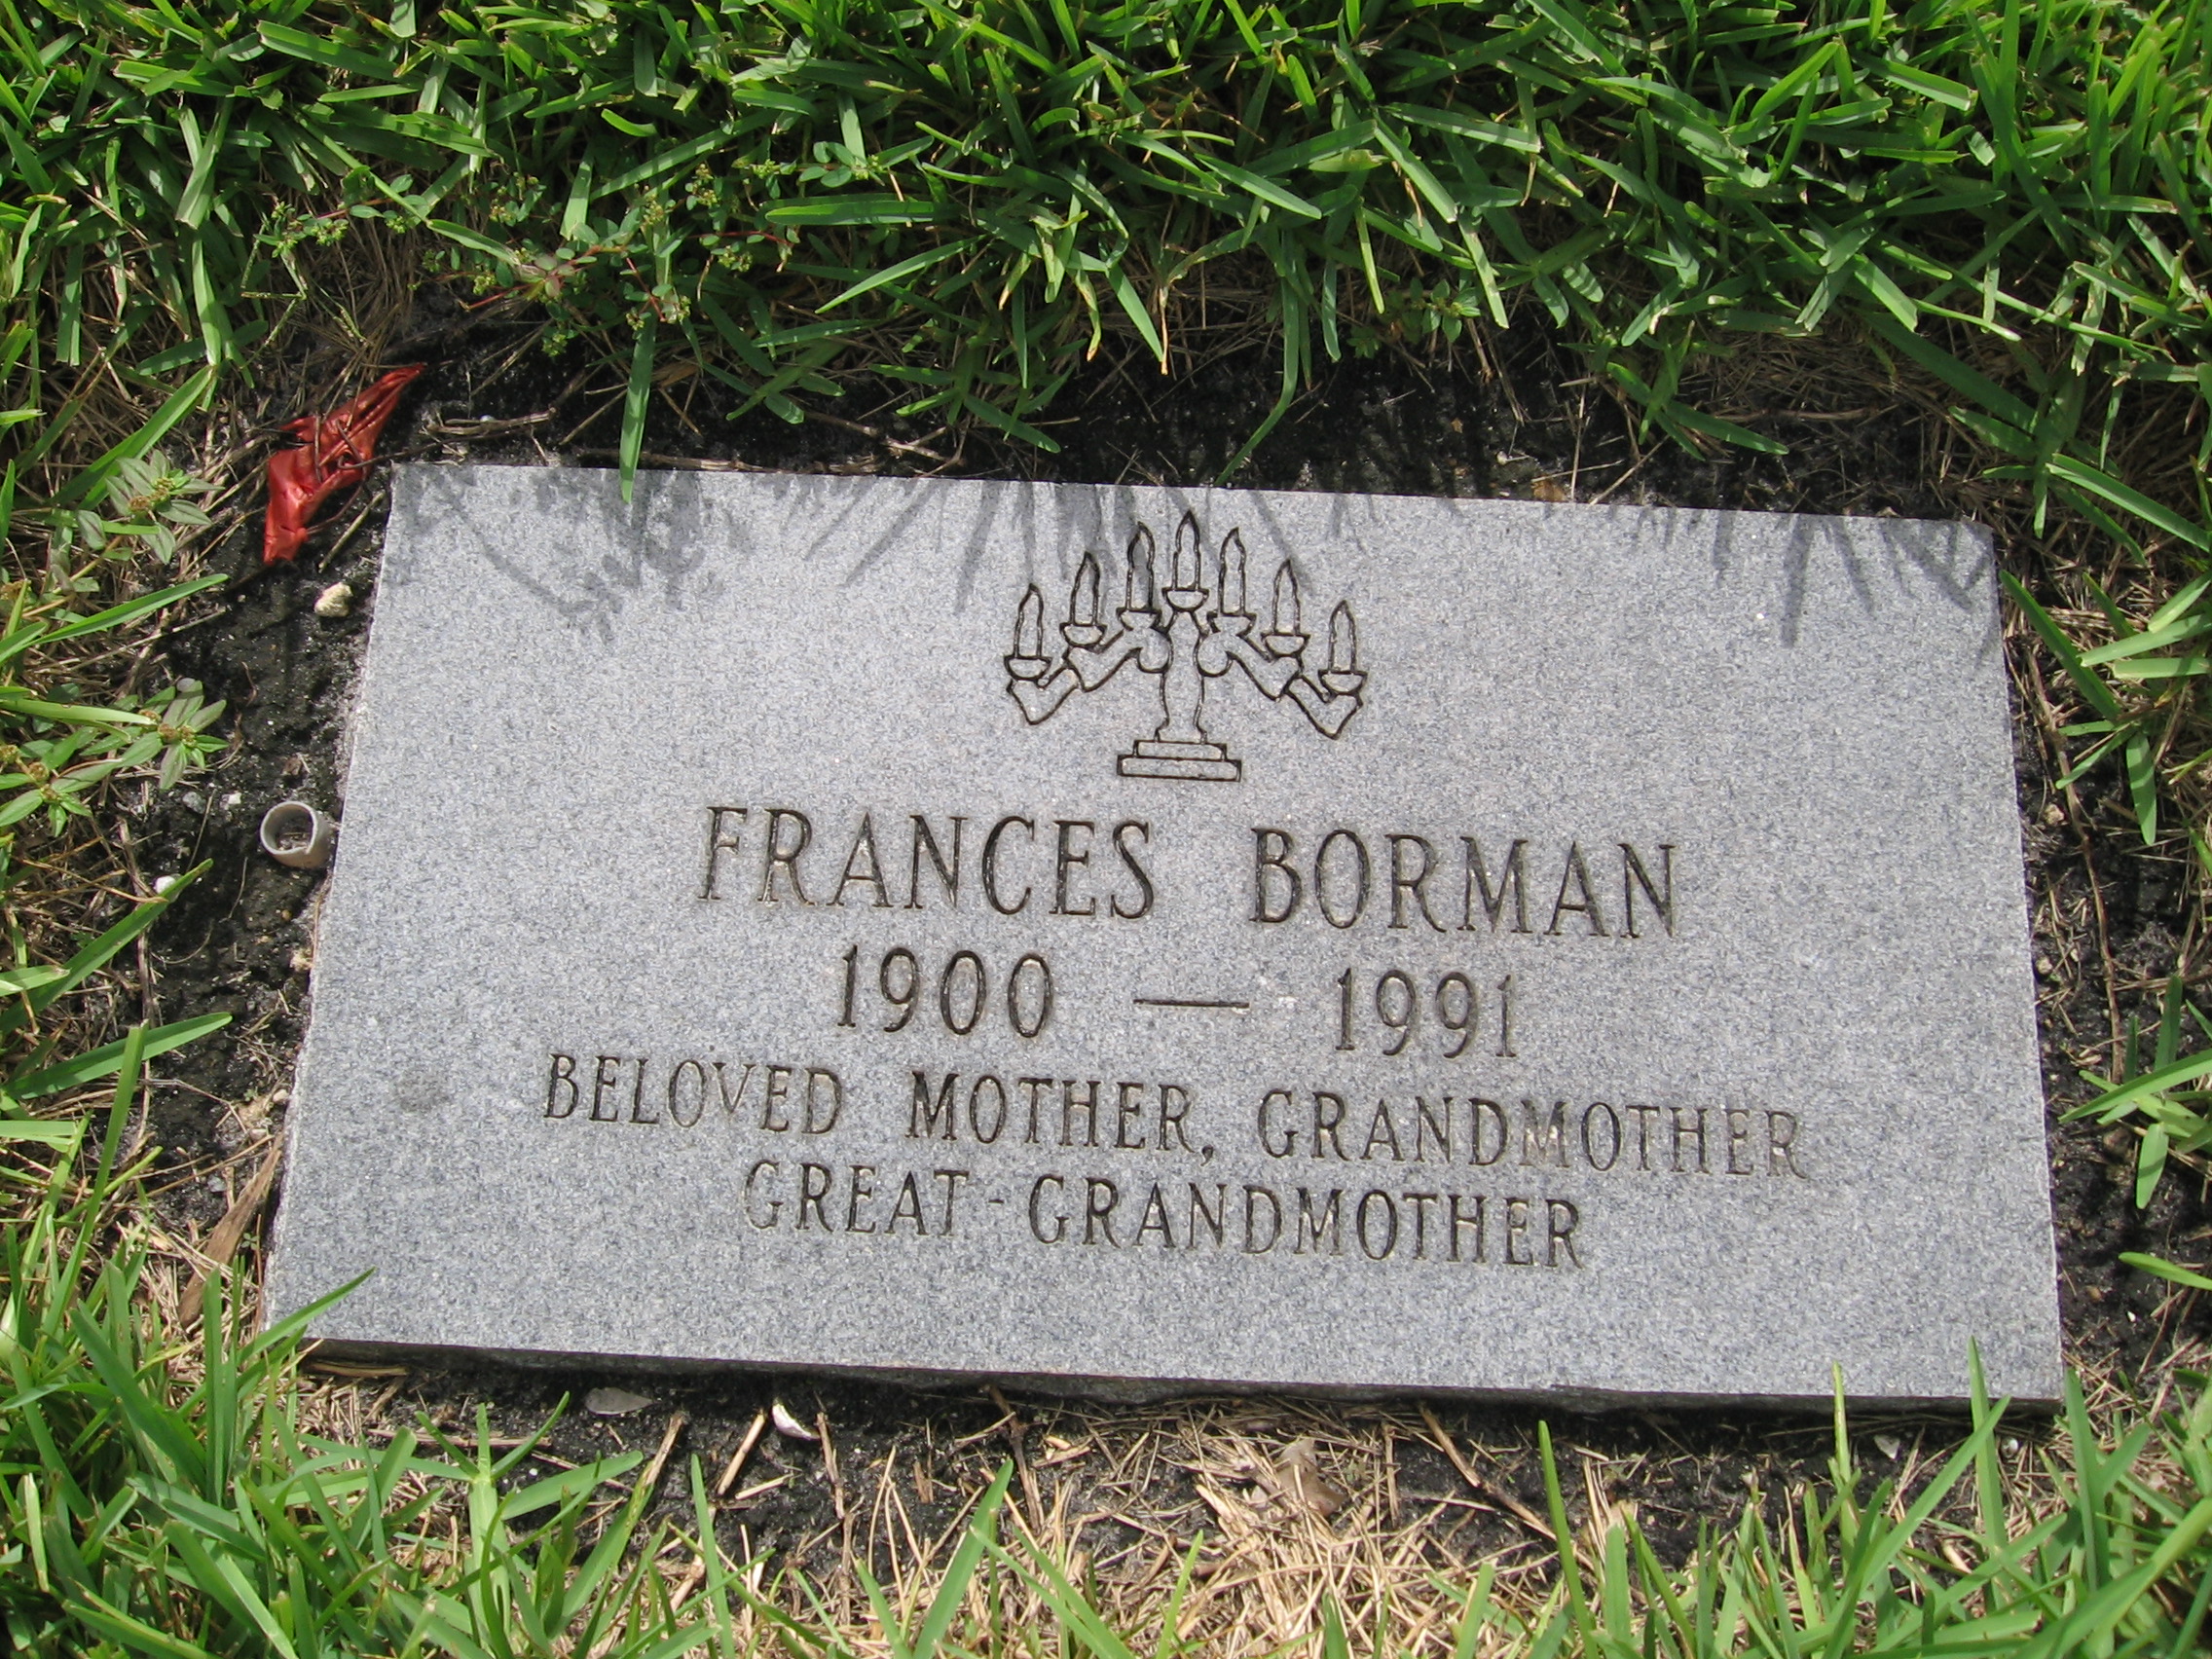 Frances Borman